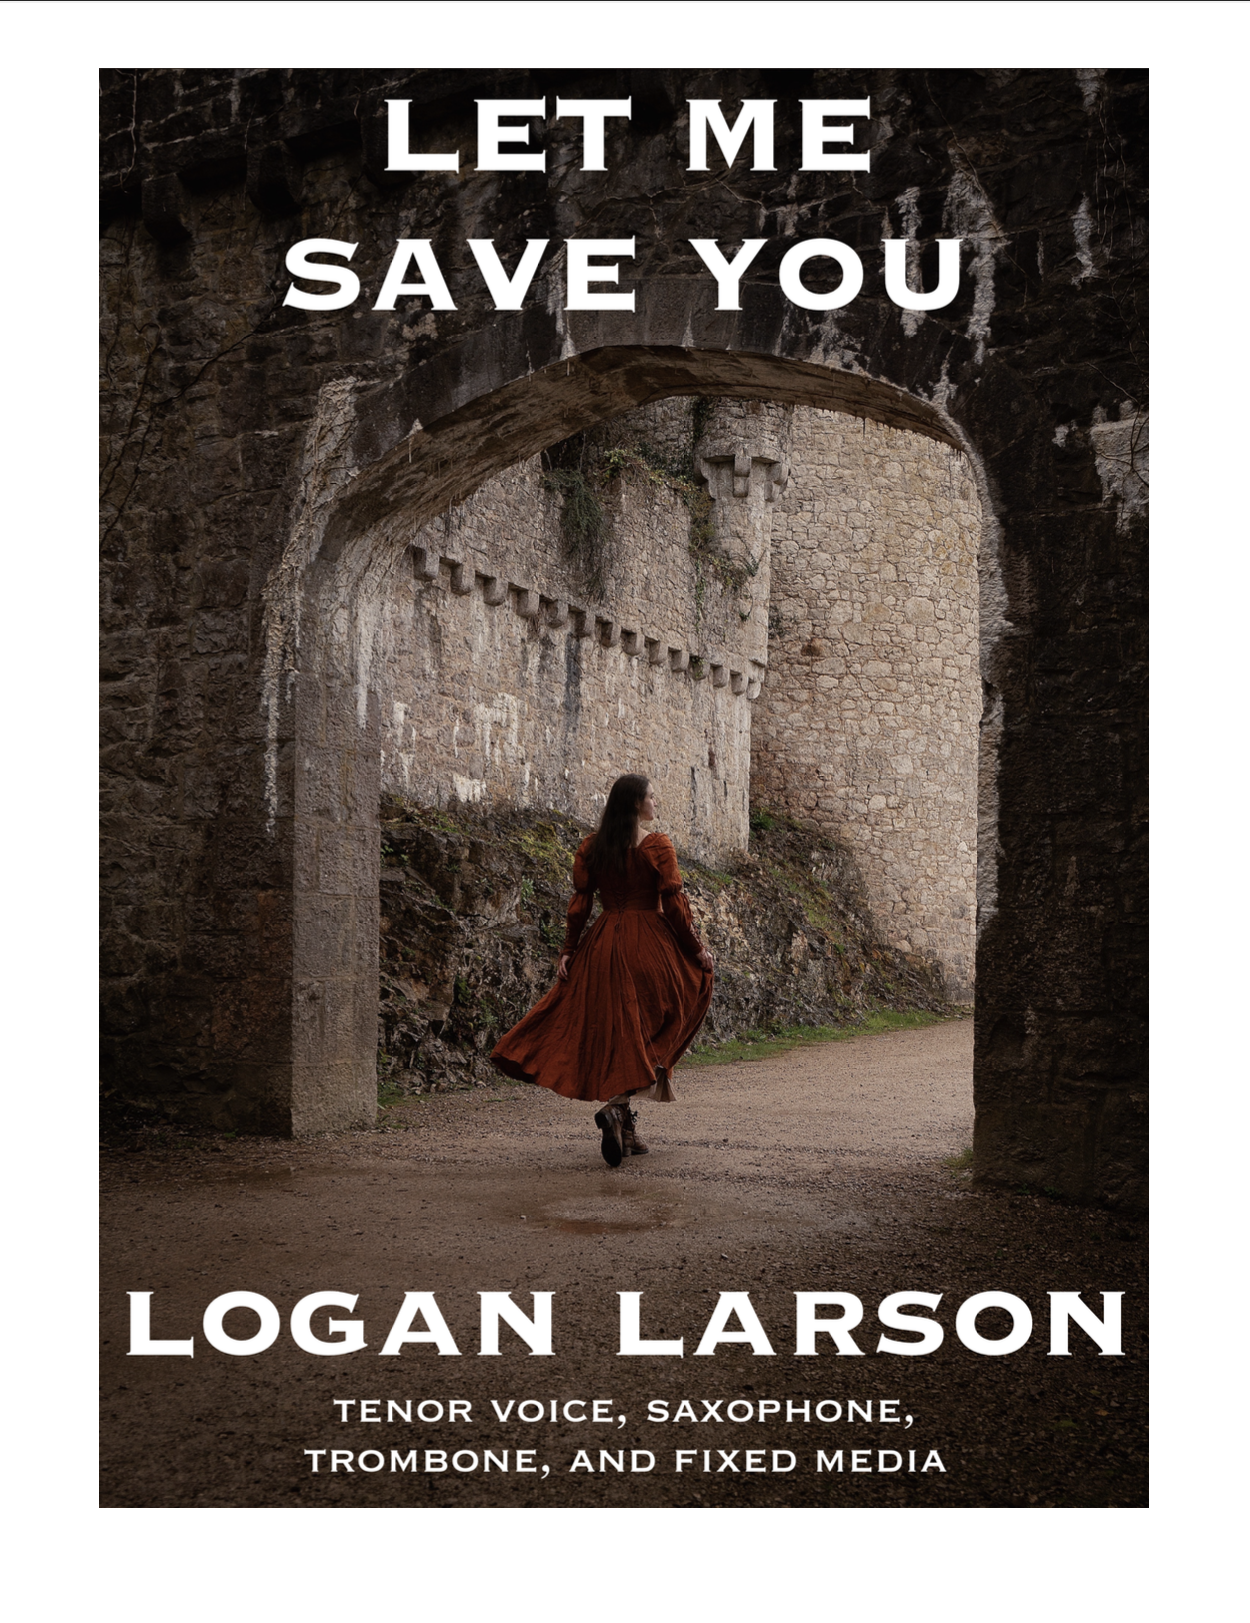 Let Me Save You by Logan Larson